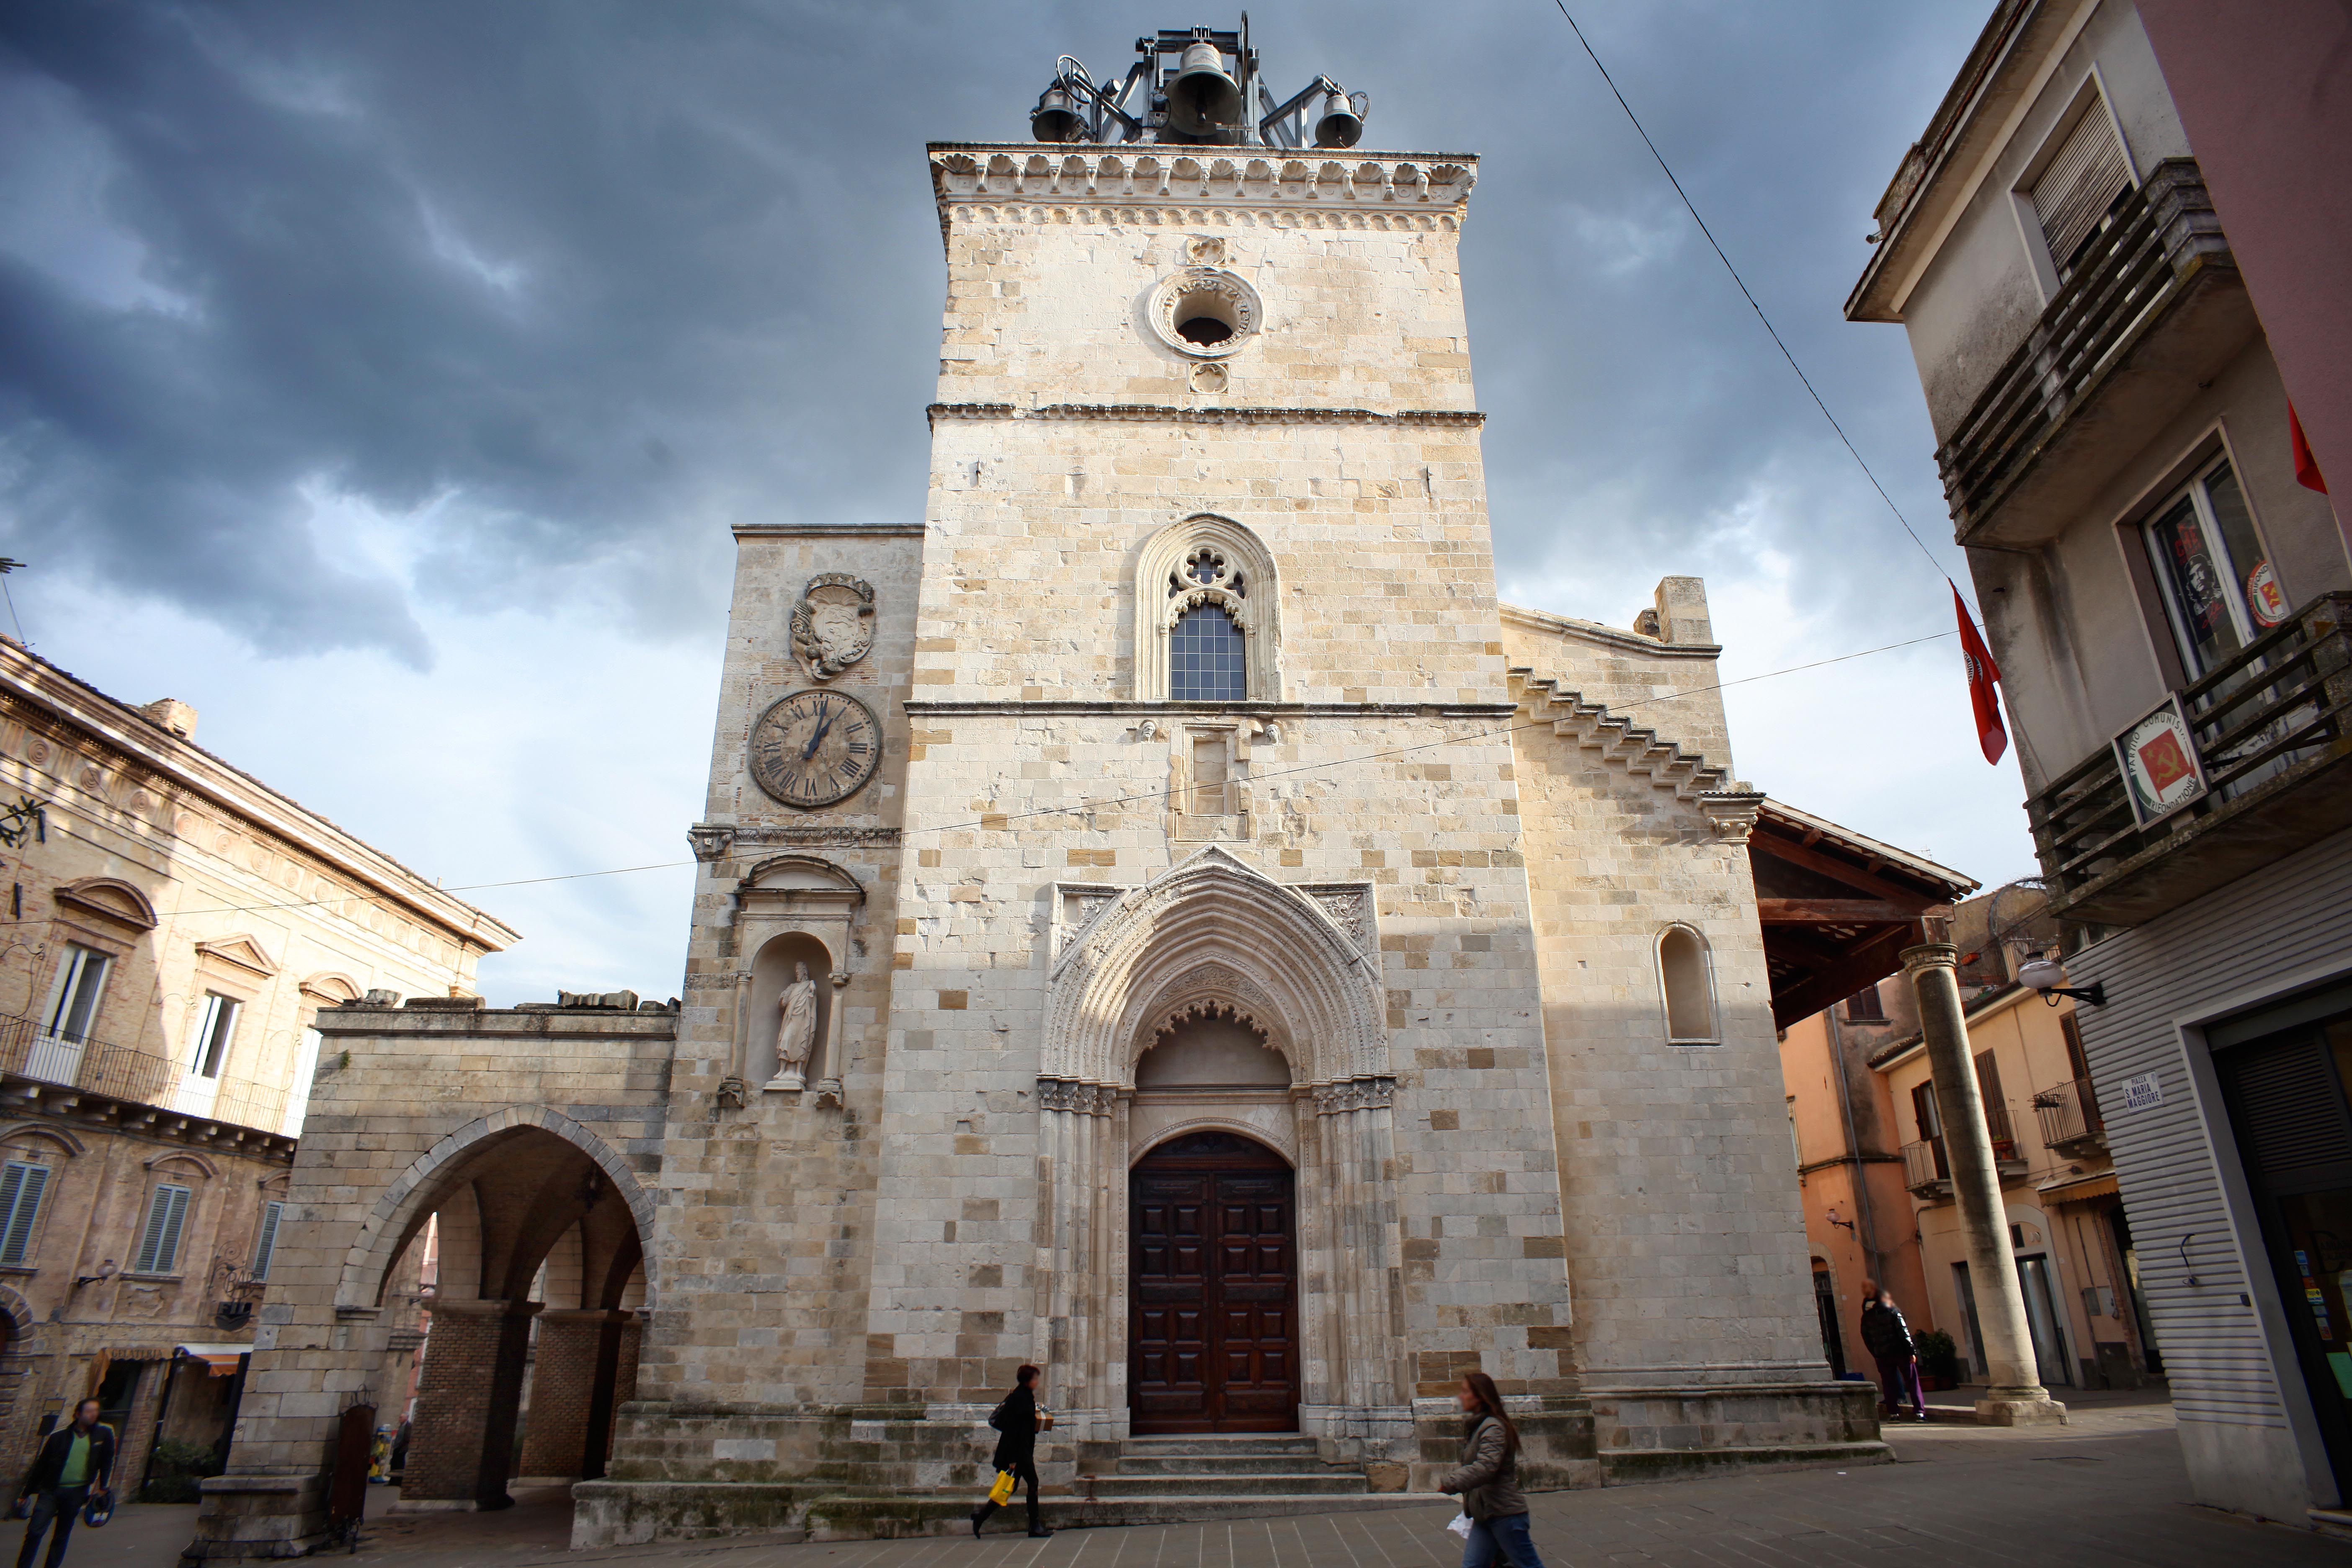 cineturismo, location, cinema, turismo, collegiata di Santa Maria Maggiore, duomo, Guardiagrele, Chieti, Abruzzo